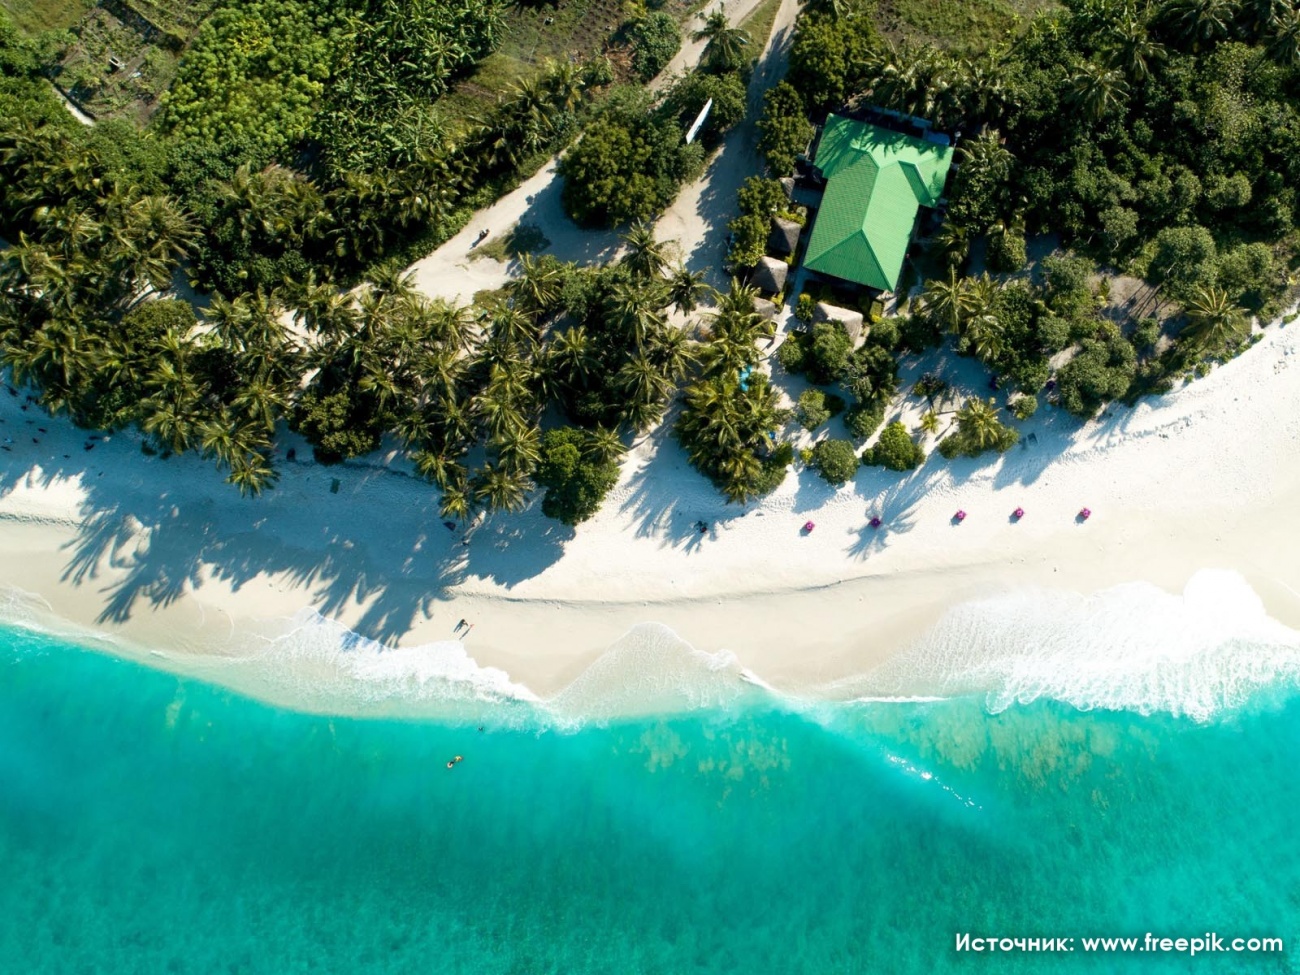 Путевка на Мальдивы - отдых на великолепных пляжах обеспечен